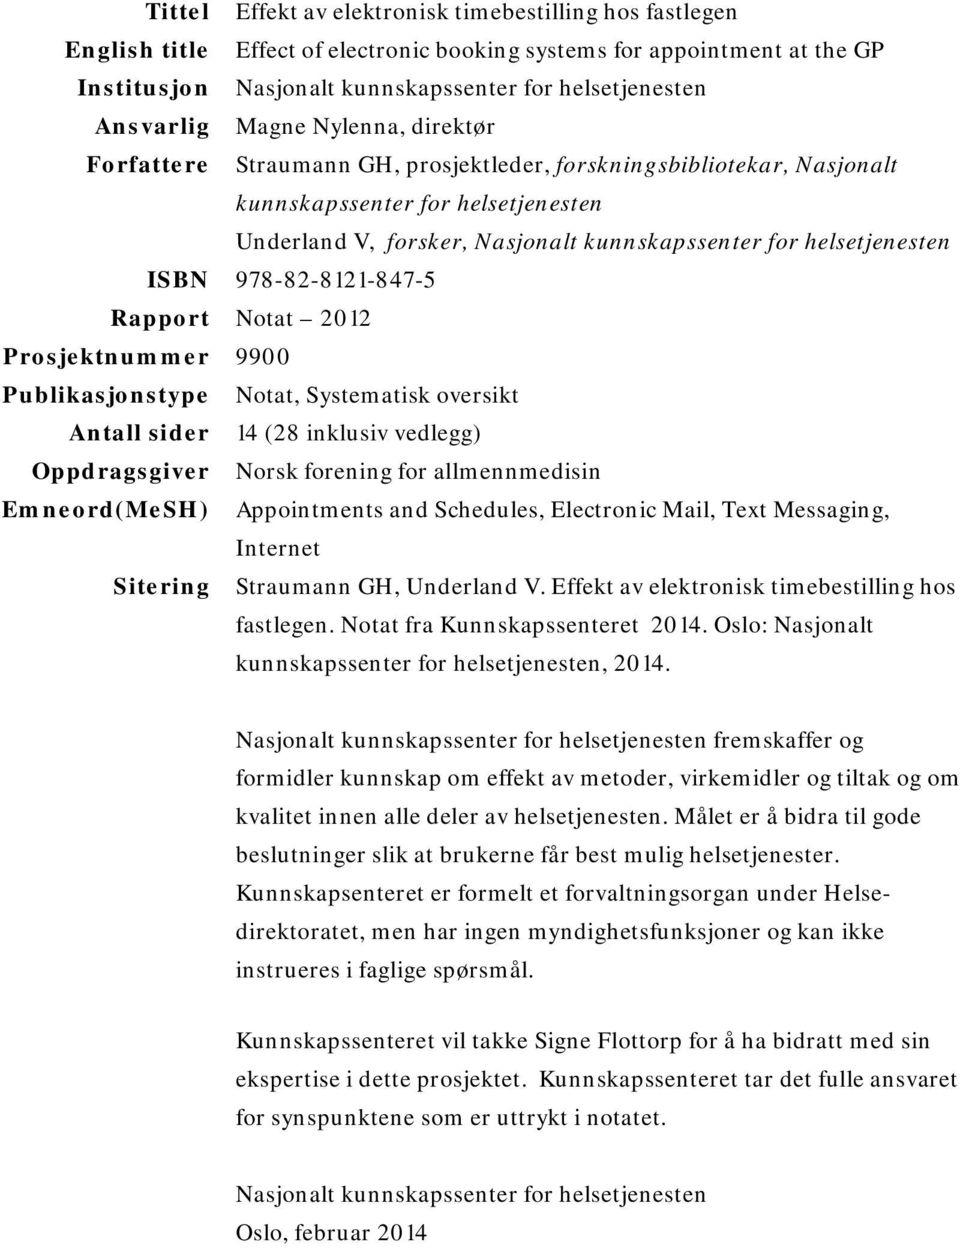 helsetjenesten ISBN 978-82-8121-847-5 Rapport Notat 2012 Prosjektnummer 9900 Publikasjonstype Notat, Systematisk oversikt Antall sider 14 (28 inklusiv vedlegg) Oppdragsgiver Norsk forening for